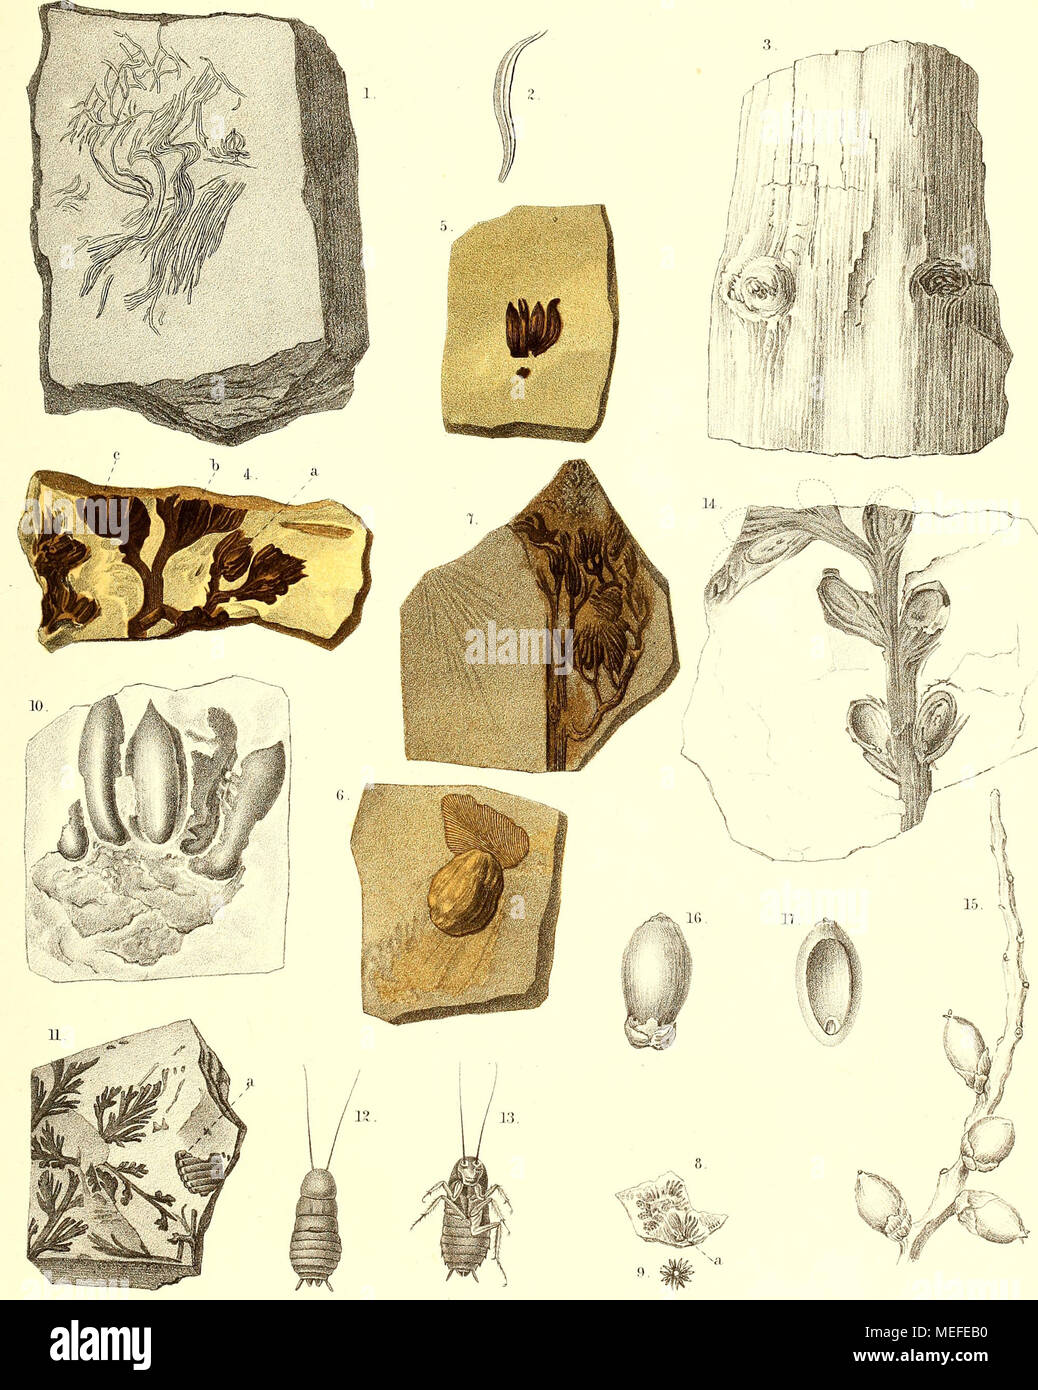 . Die fossile Flora der Permischen Formation . l. 2. Coniferen- Blätter der Steinkohlen-Formation, — 3. Araucarites Rhodeanus Göpj 4- 6. Calathiops Beinertiana Göpp. — 7. C. acicularis Göpp. — 3—10. C. microcarpa Göpp. — 3 5, Blattina splendens Göpp. — 12,13. Biatta orientab's. — 14. Rbabdocarpus Germariarms Göpp. — 15. Scaforthia elegans. — 16 17. Cocos eomosa. Stock Photo